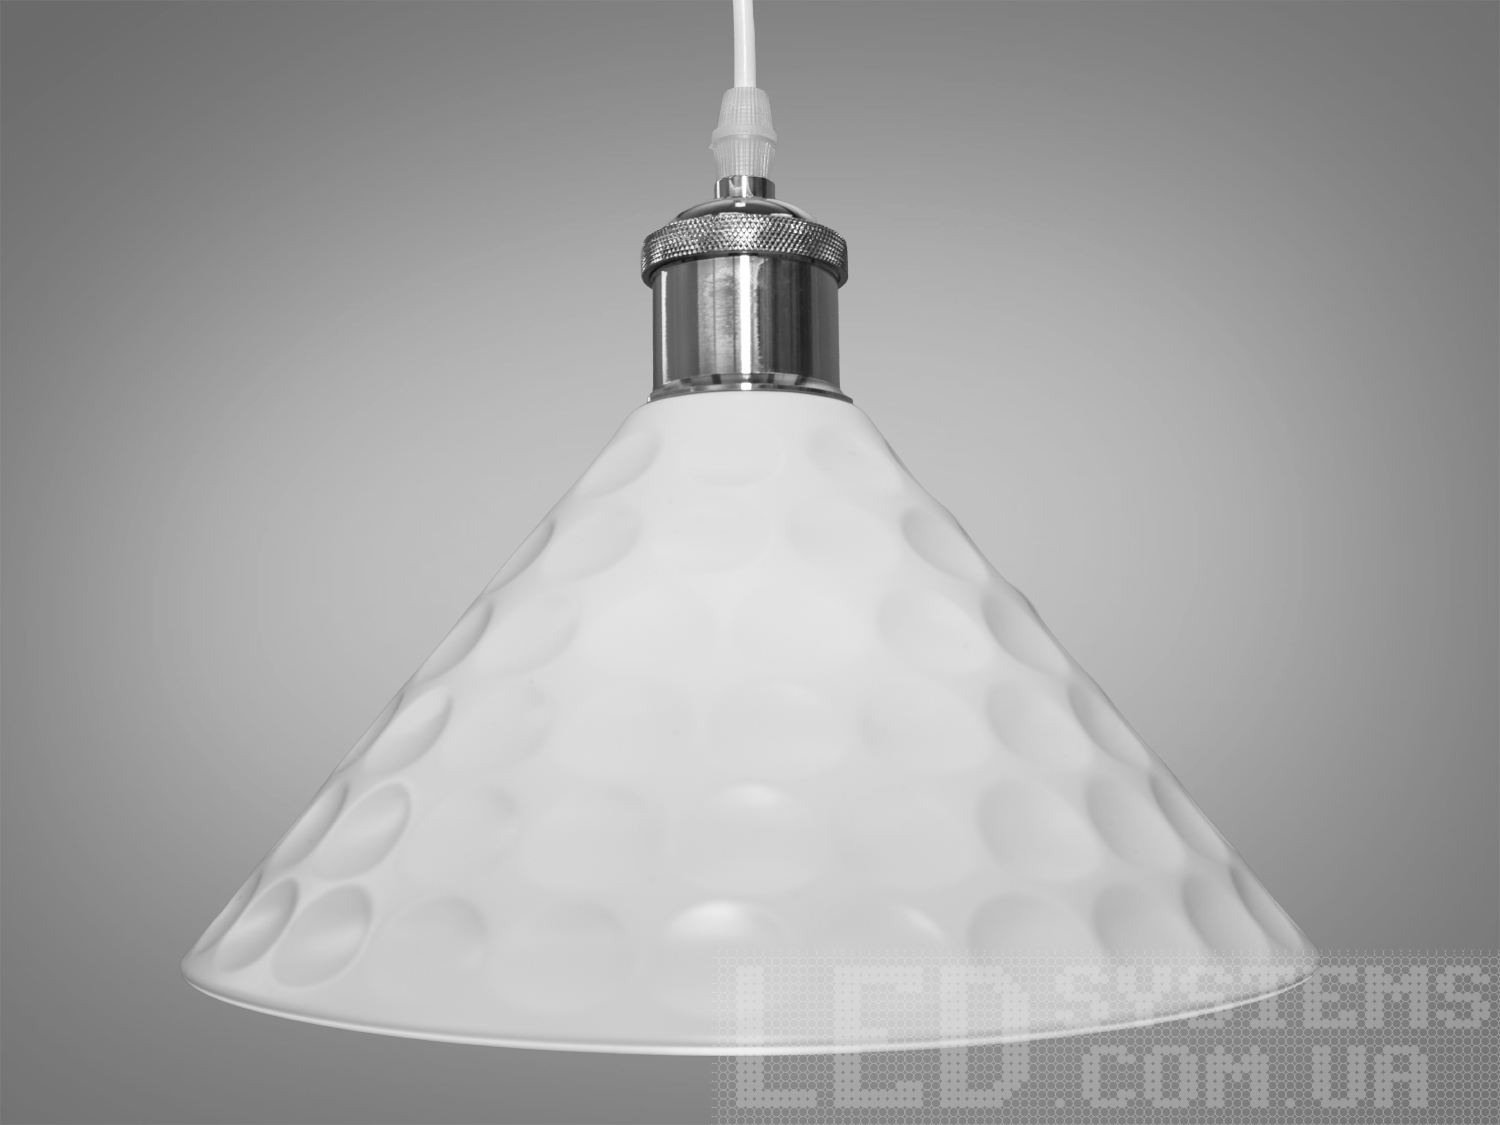 Мінімалістичний підвісний світильник у стилі Loft, колір білийПодвесы, Светильники 